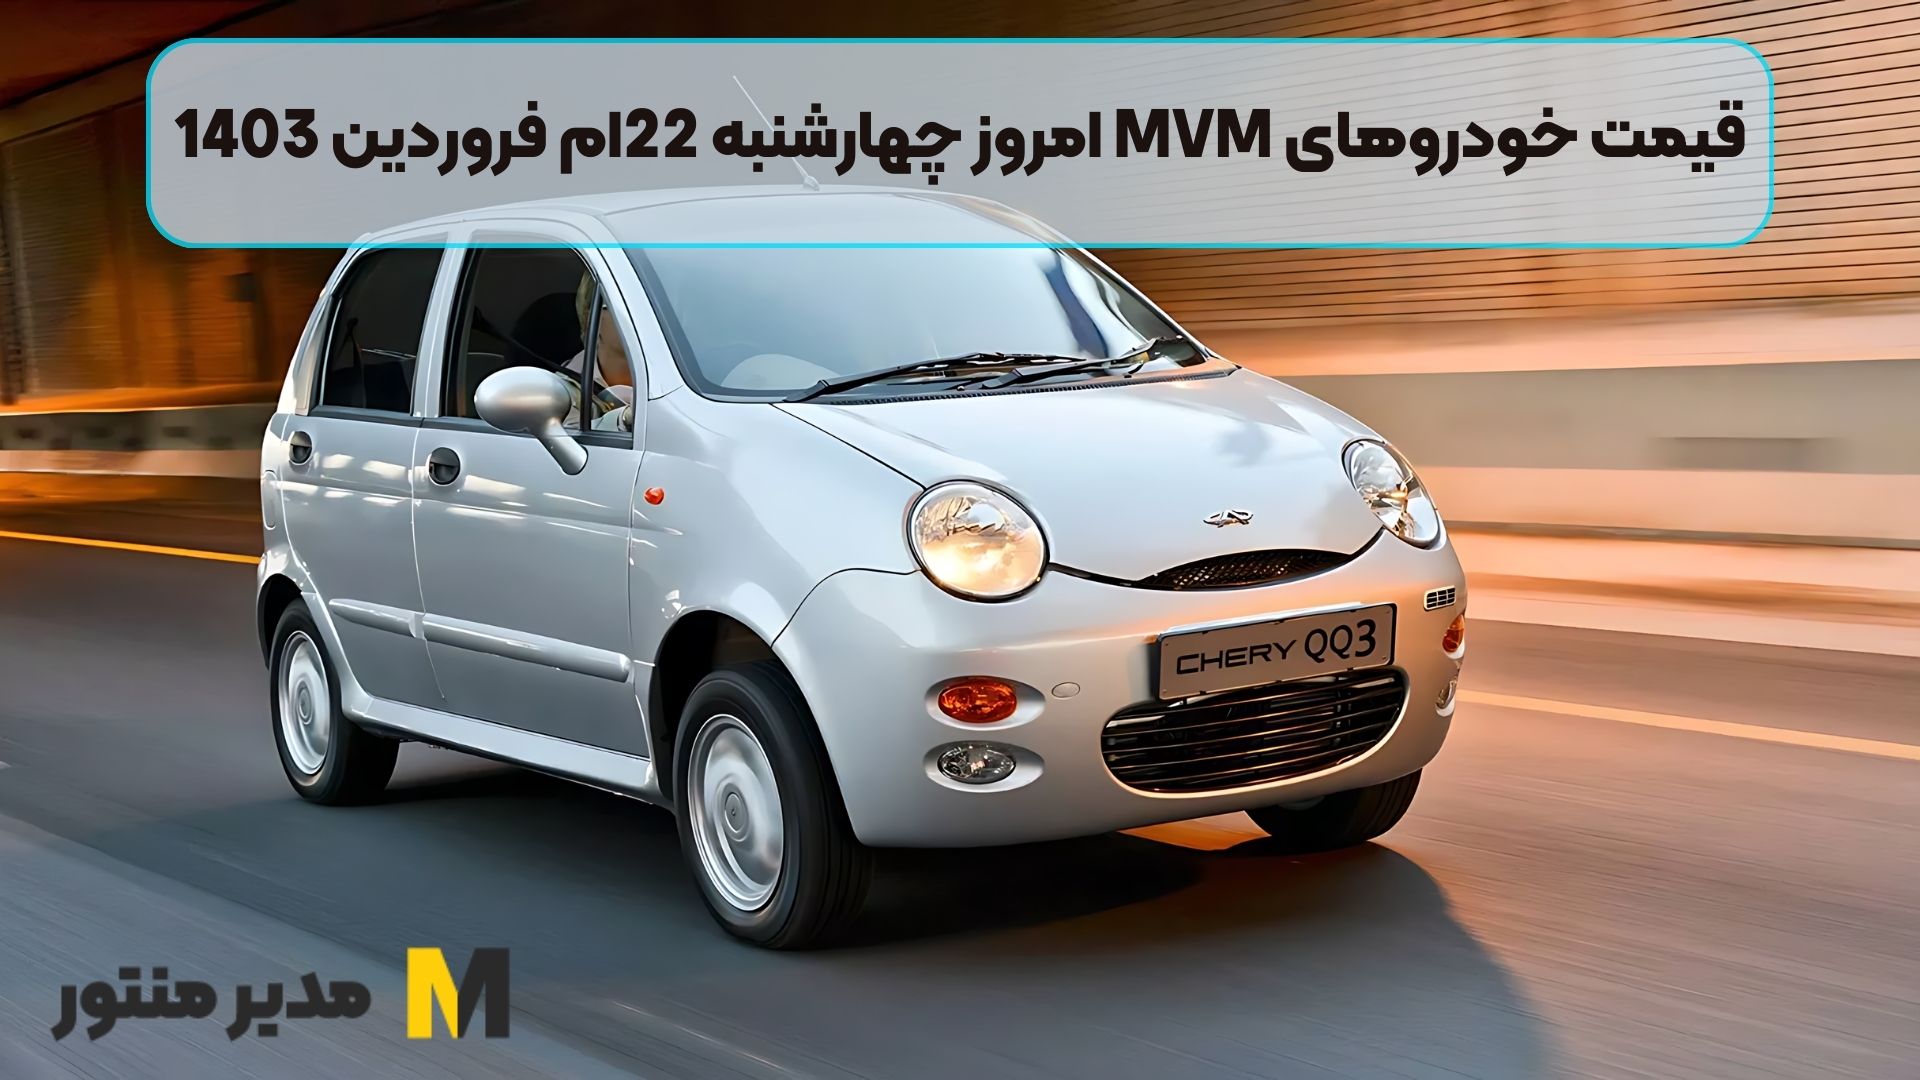 قیمت خودروهای MVM امروز چهارشنبه 22ام فروردین 1403